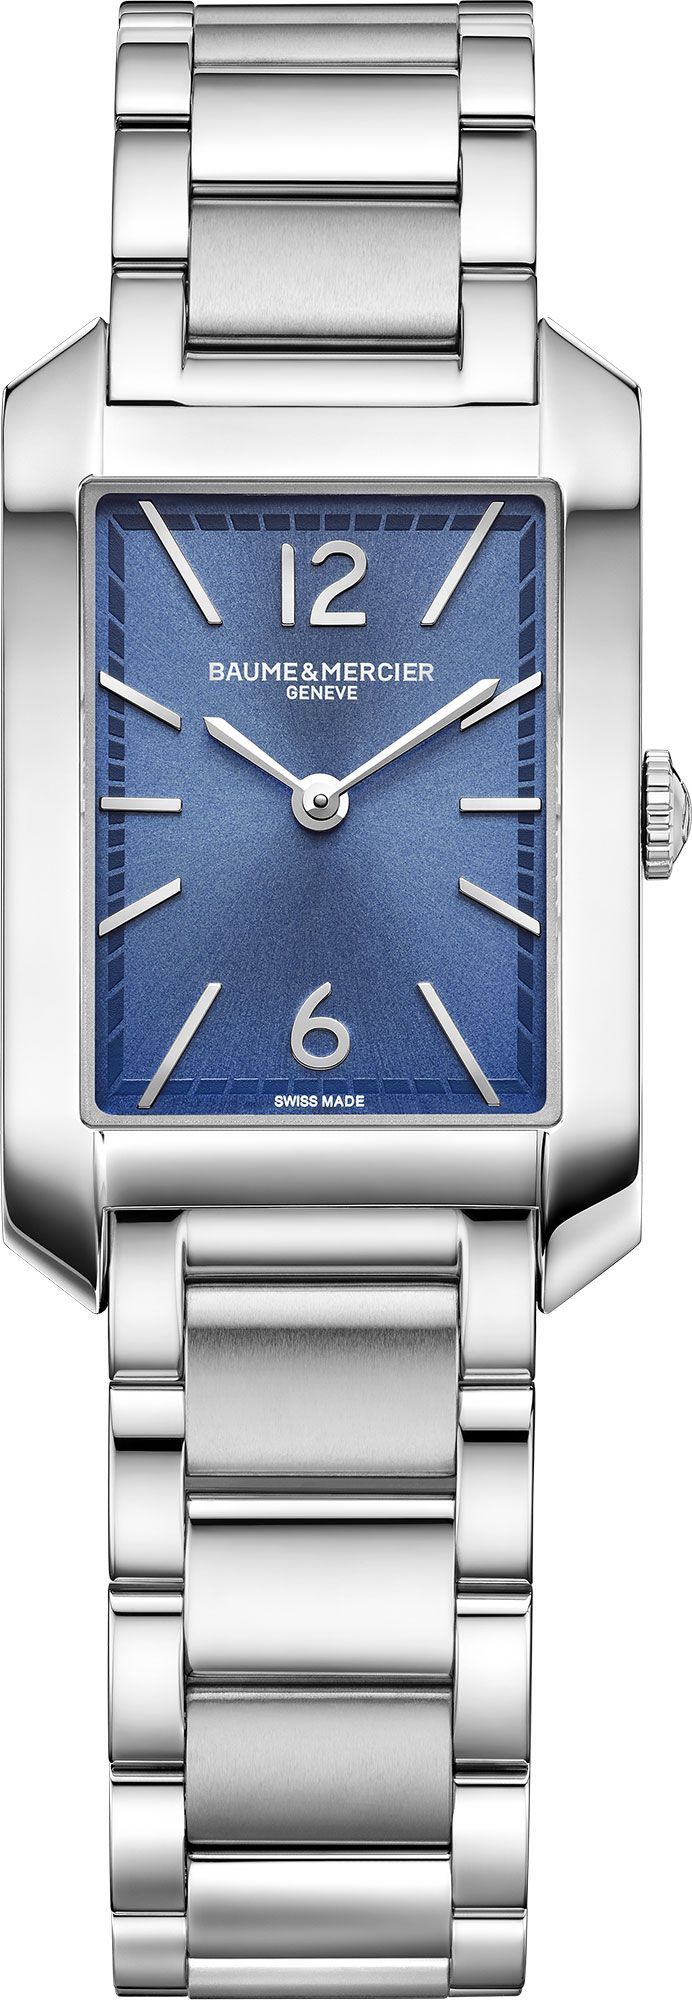 Baume & Mercier  22 mm Watch in Blue Dial For Women - 1